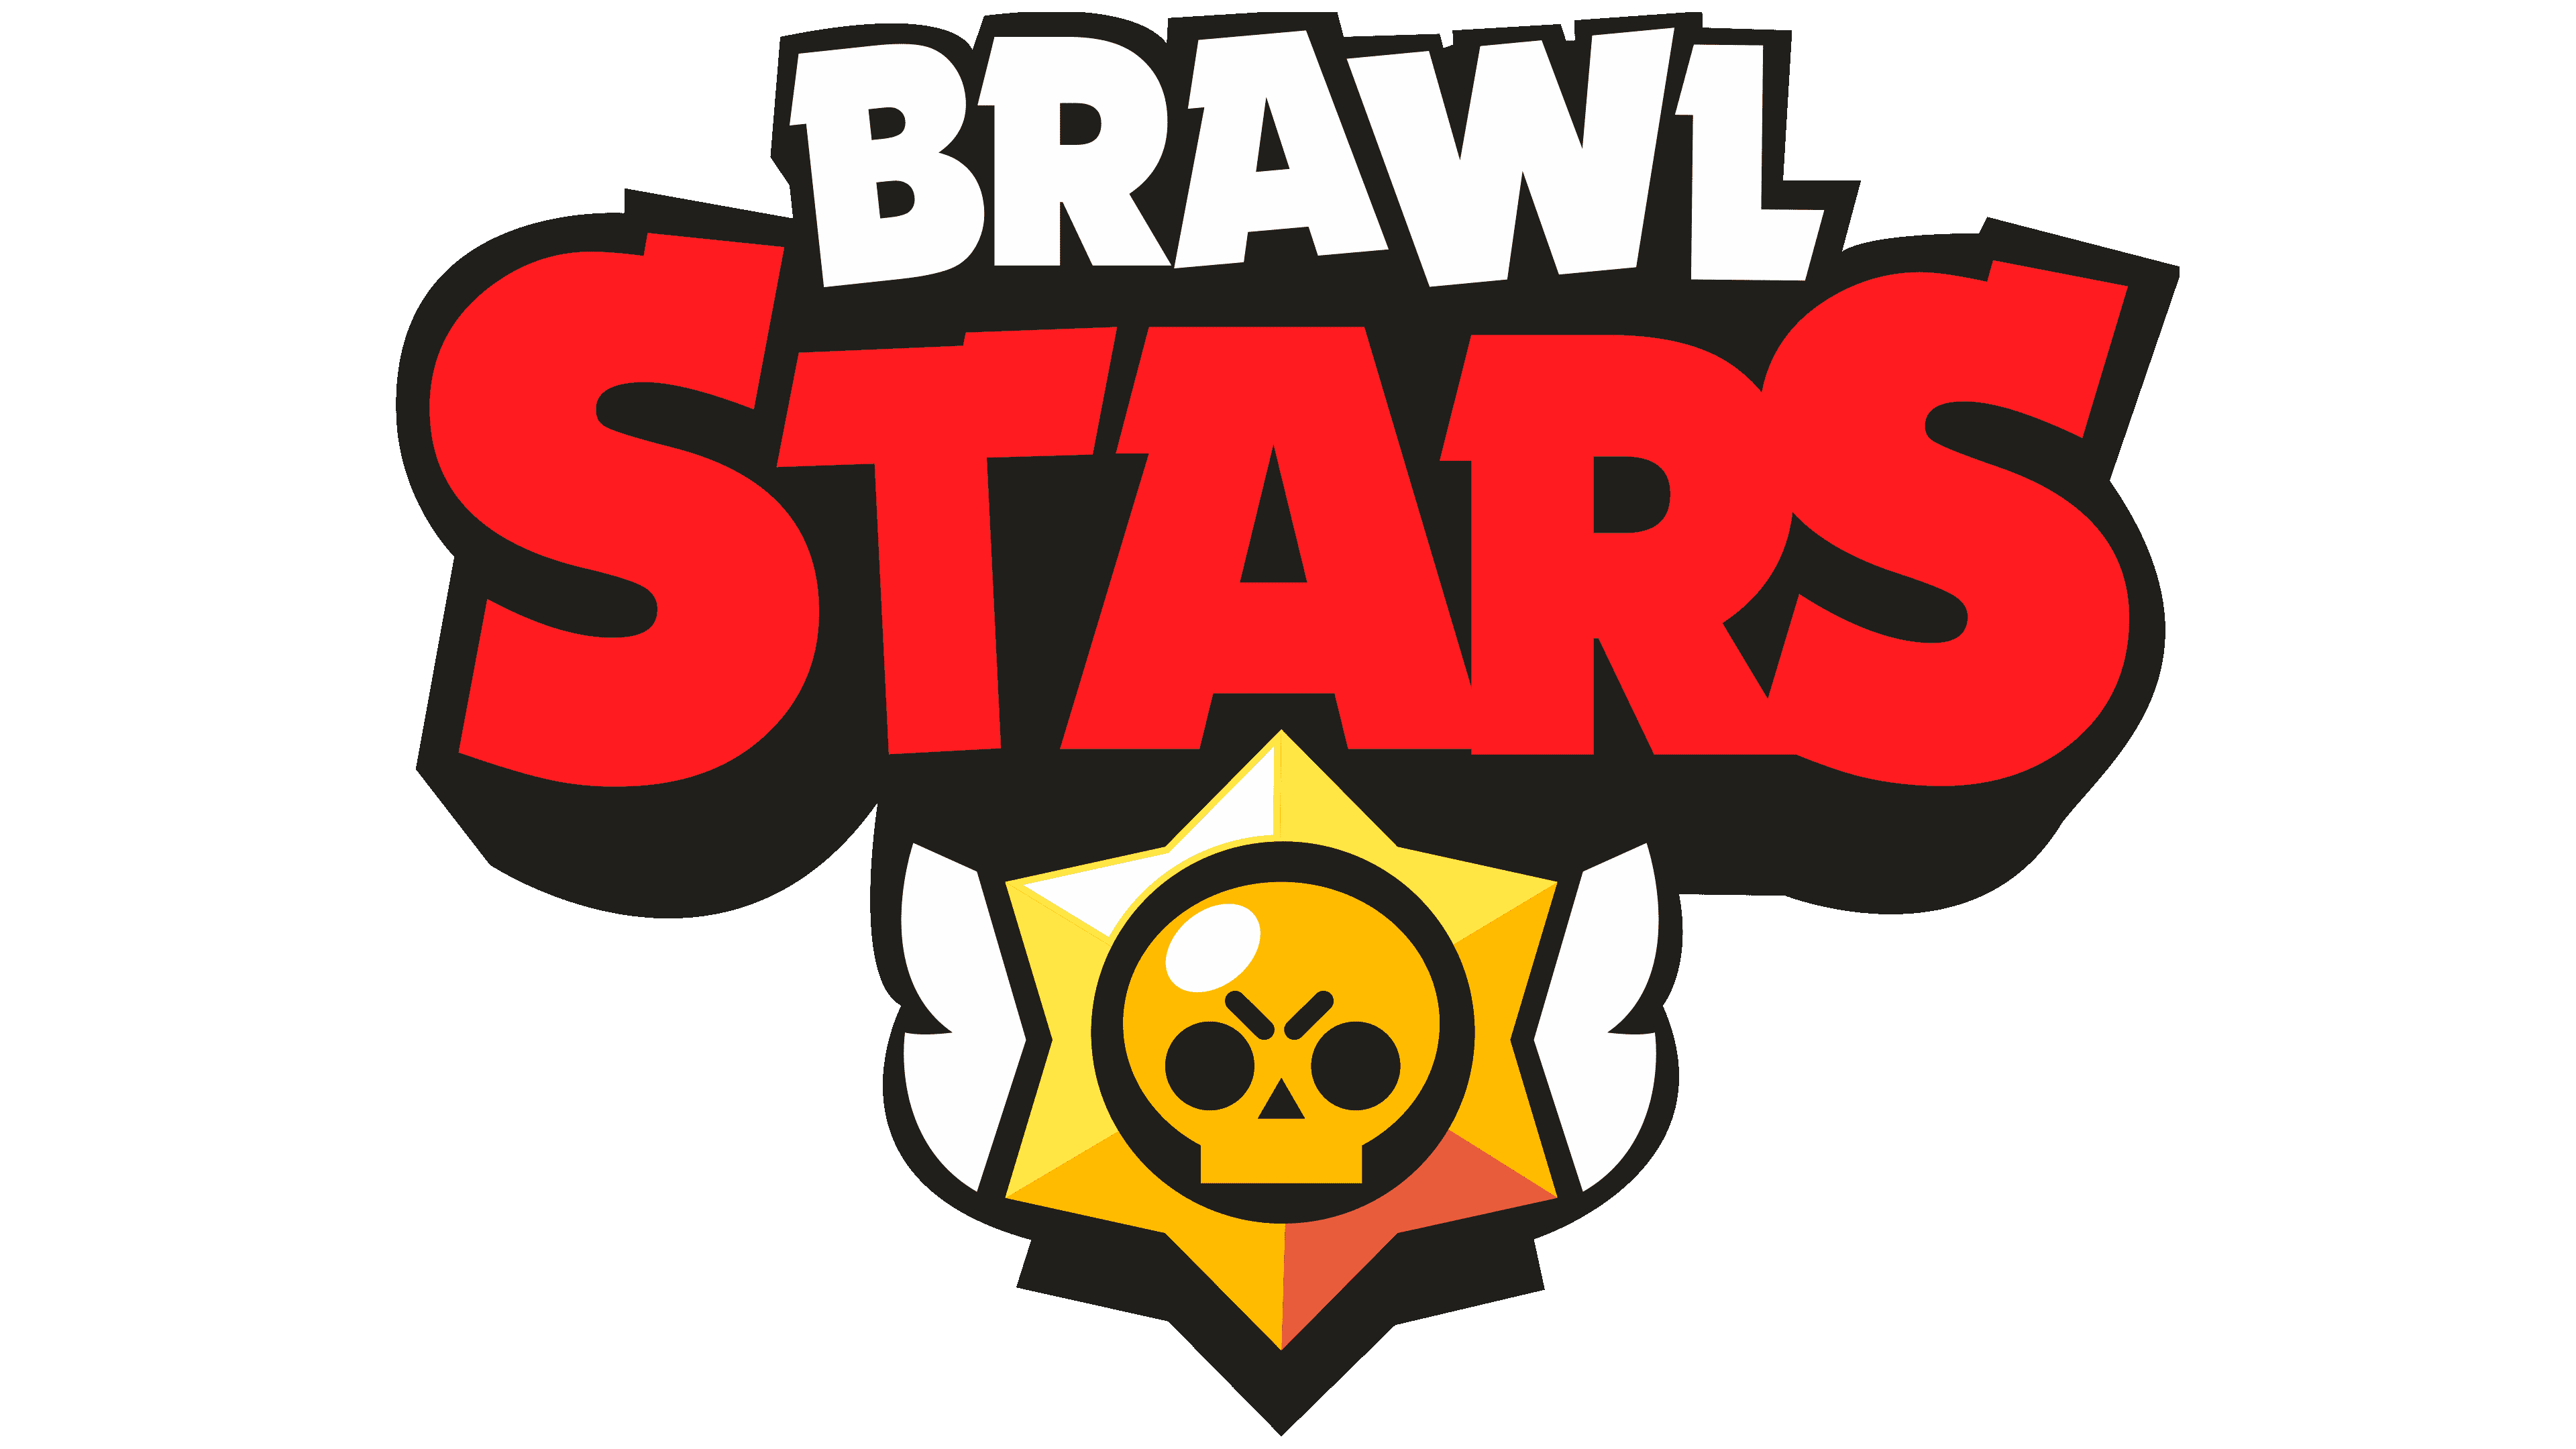 Brawls_stars banner